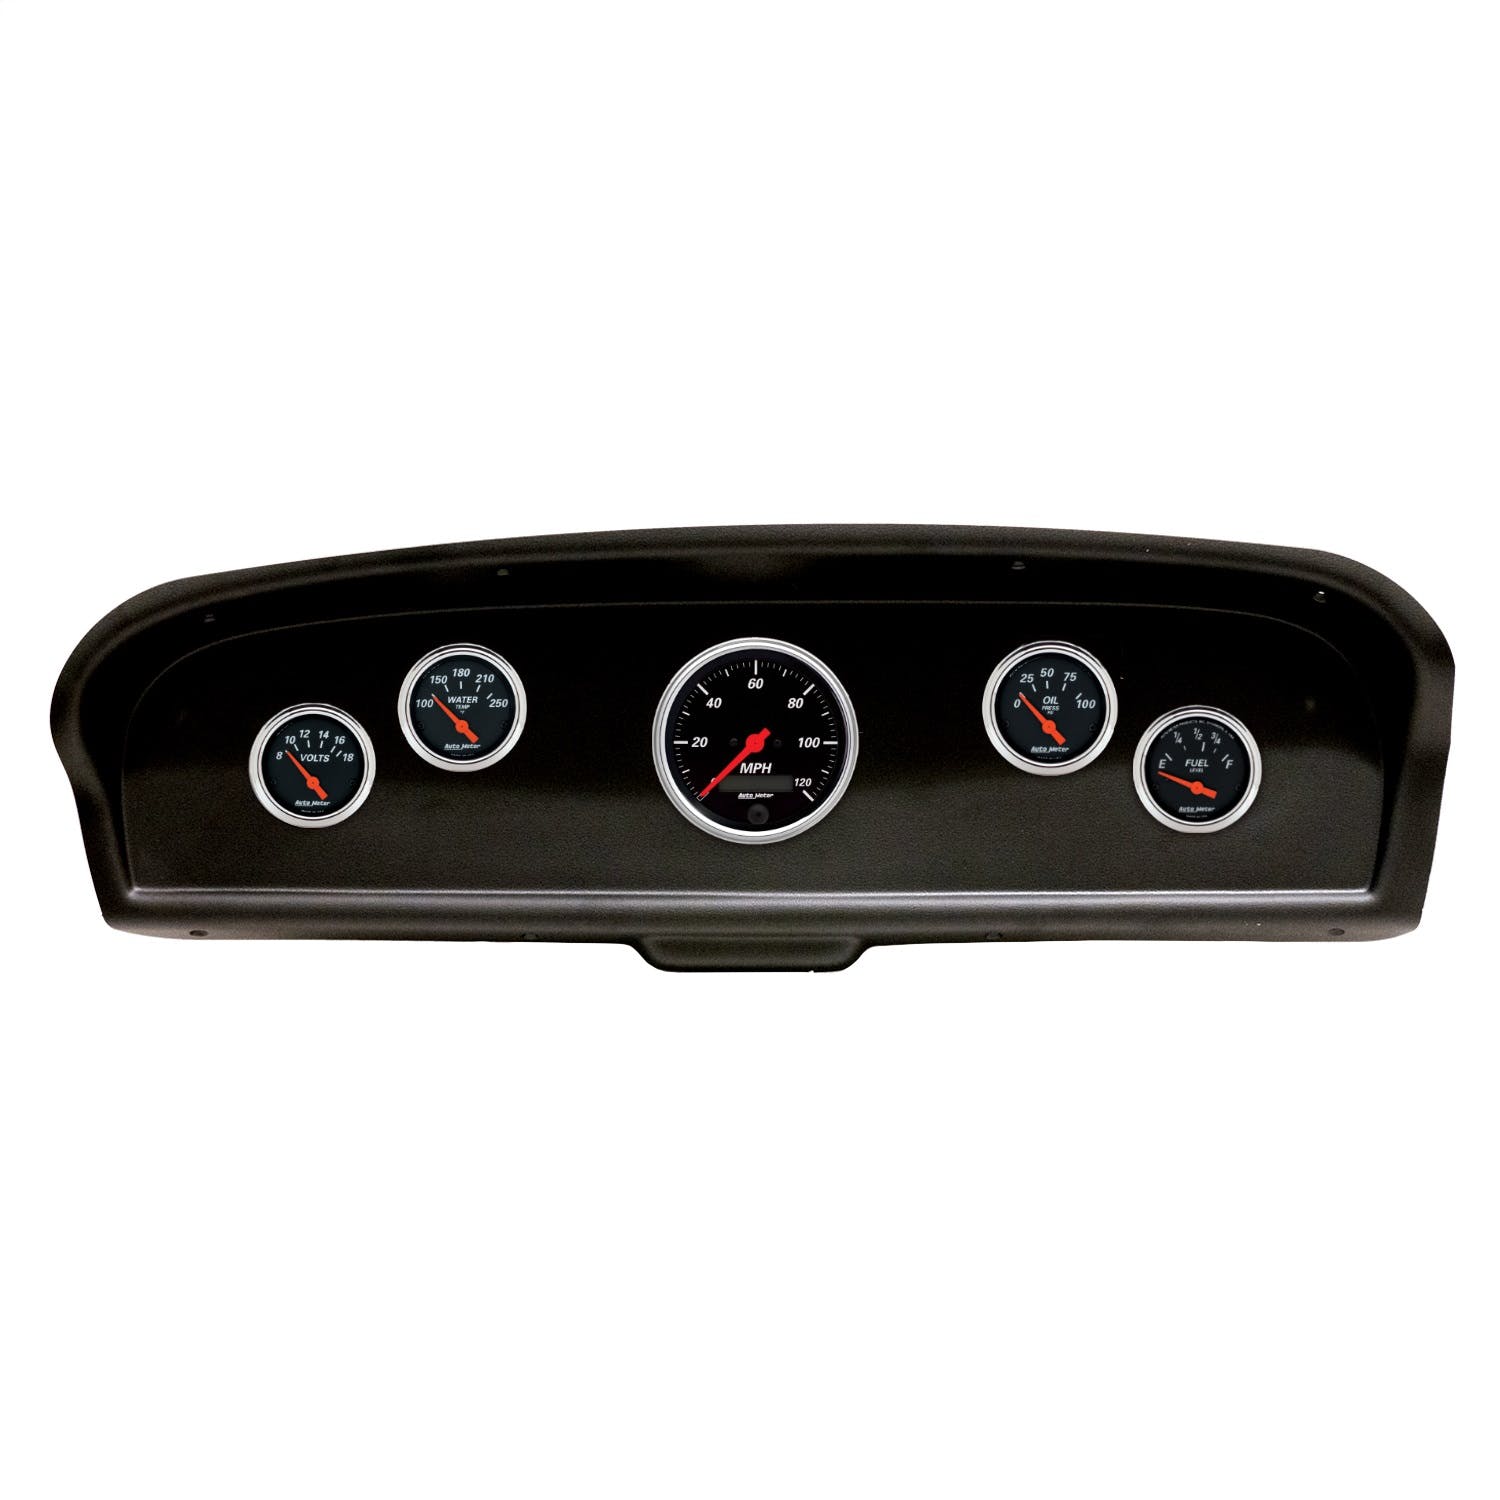 AutoMeter Products 2105-06 5 Gauge Direct-Fit Dash Kit, Ford Truck 61-66, Designer Black